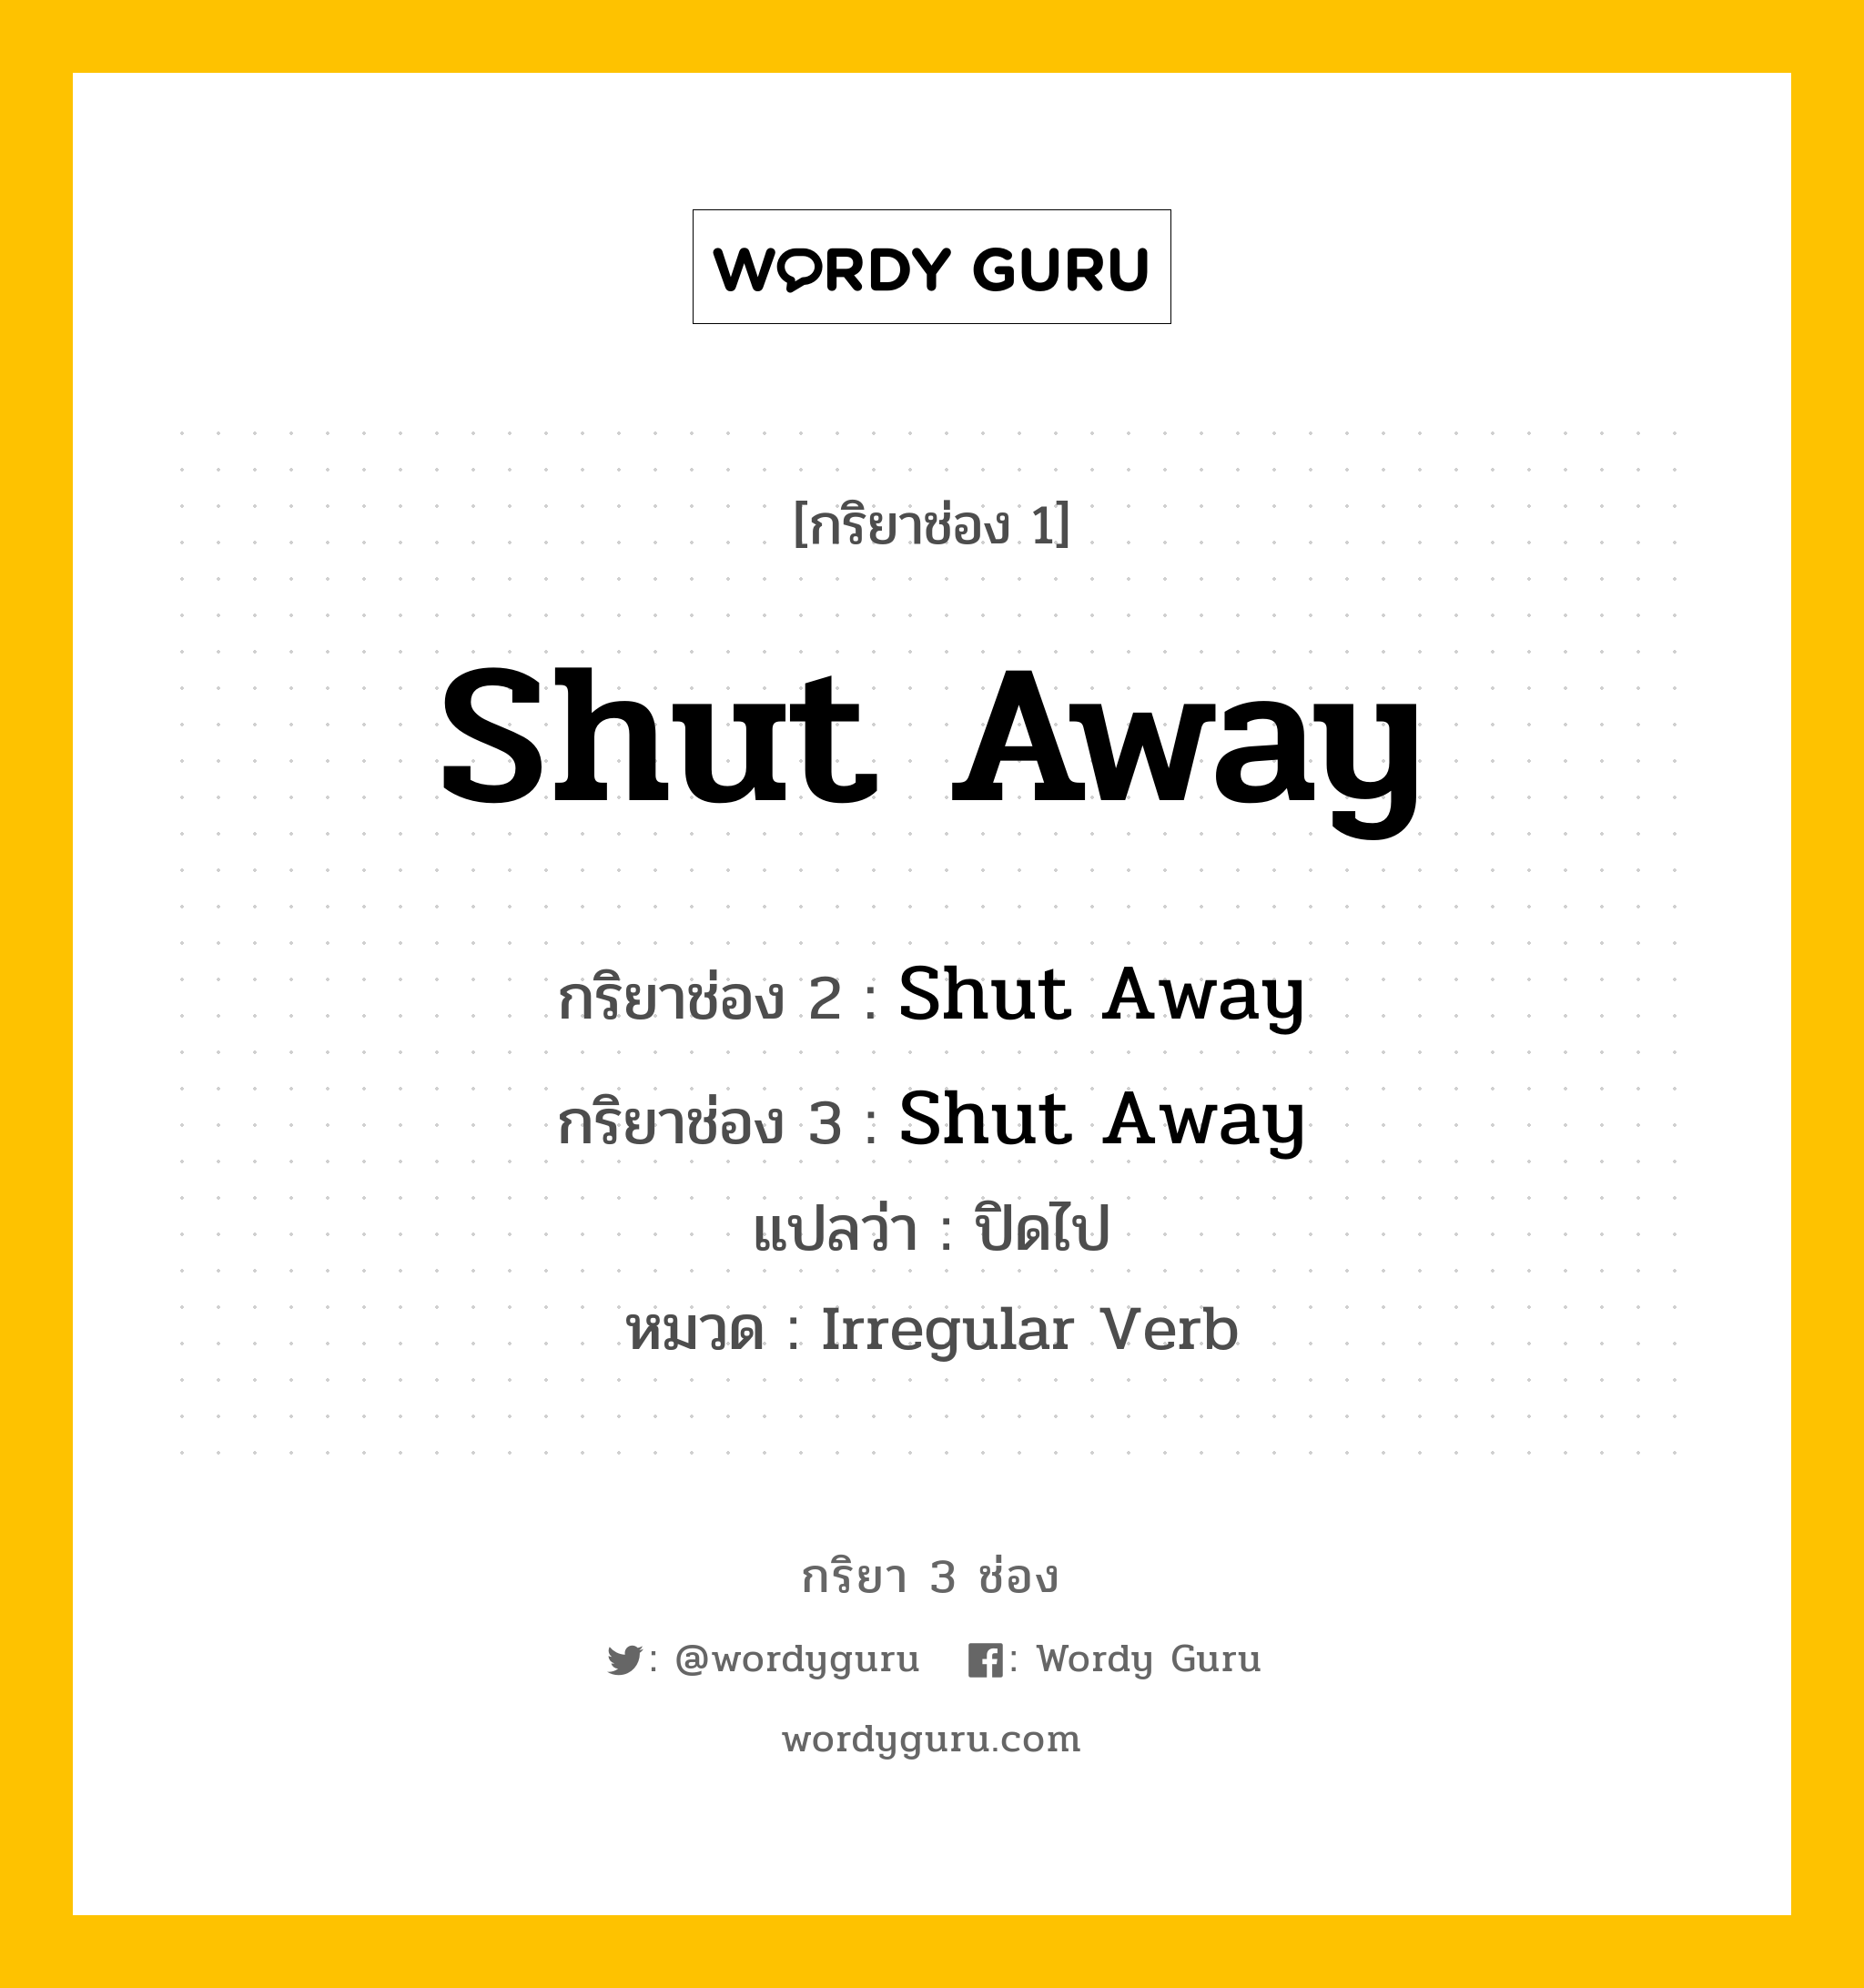 กริยา 3 ช่อง: Shut Away ช่อง 2 Shut Away ช่อง 3 คืออะไร, กริยาช่อง 1 Shut Away กริยาช่อง 2 Shut Away กริยาช่อง 3 Shut Away แปลว่า ปิดไป หมวด Irregular Verb หมวด Irregular Verb